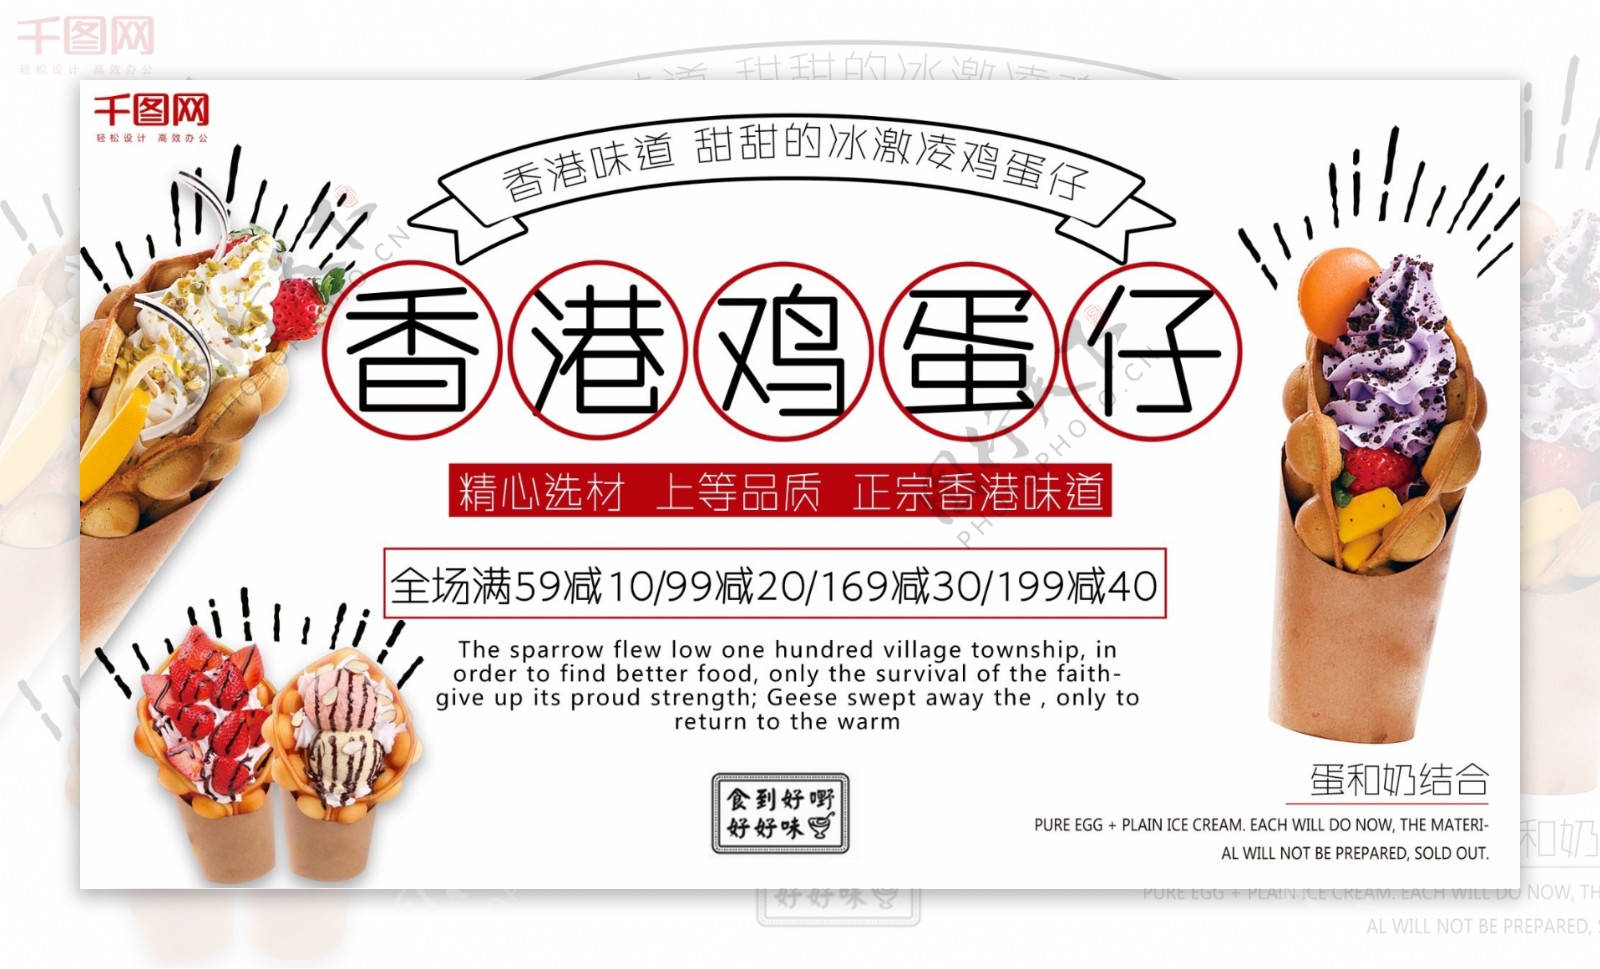 白色背景简约清新香港小吃鸡蛋仔促销展板